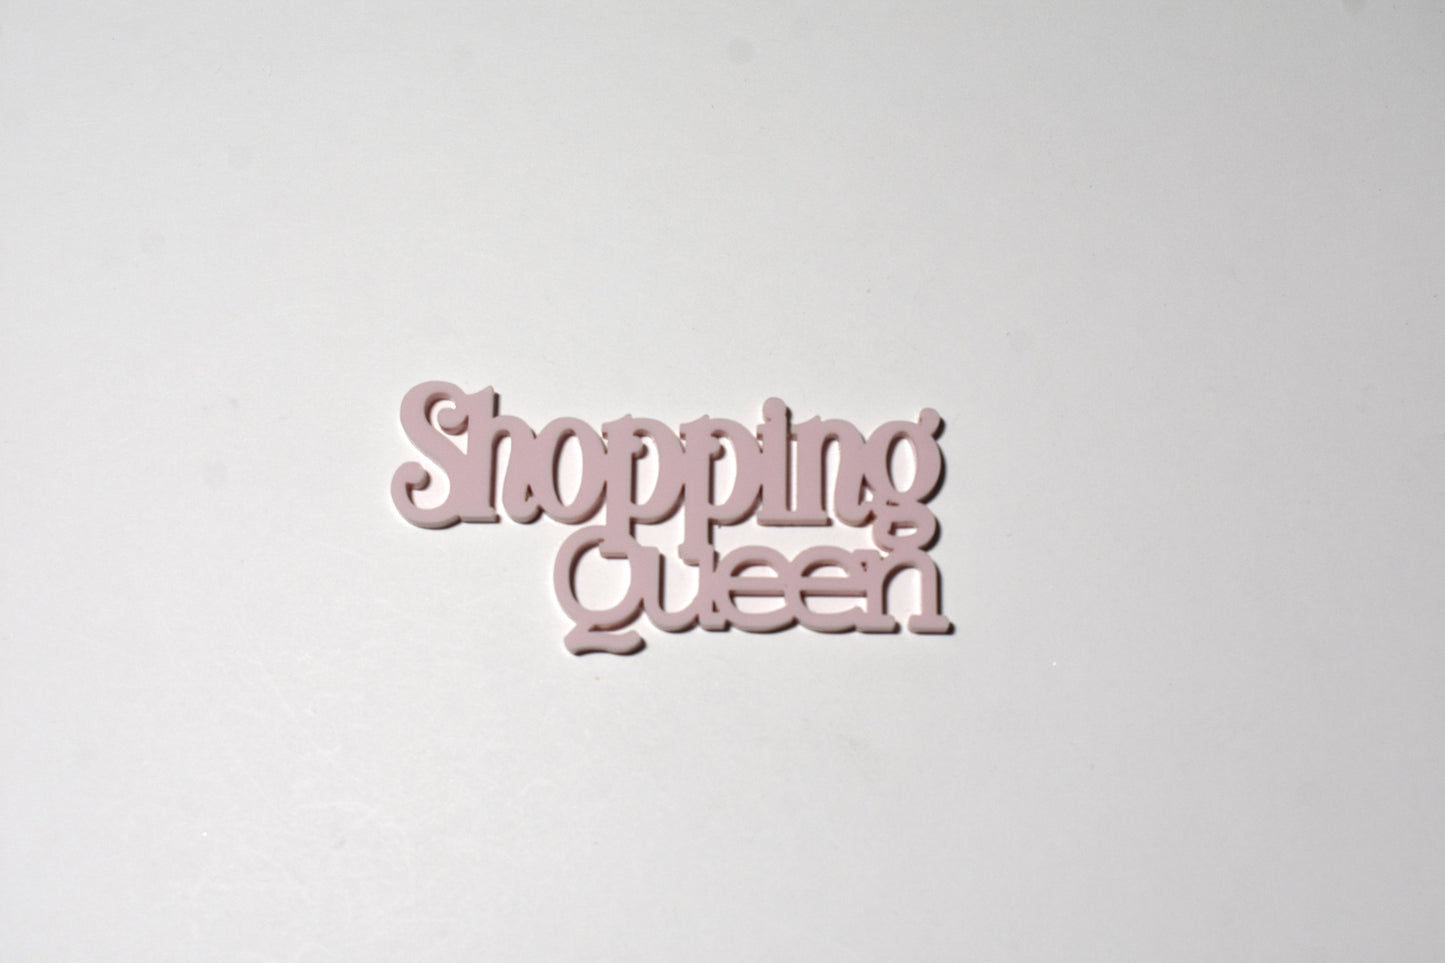 Shopping queen - Creative Designs By Kari